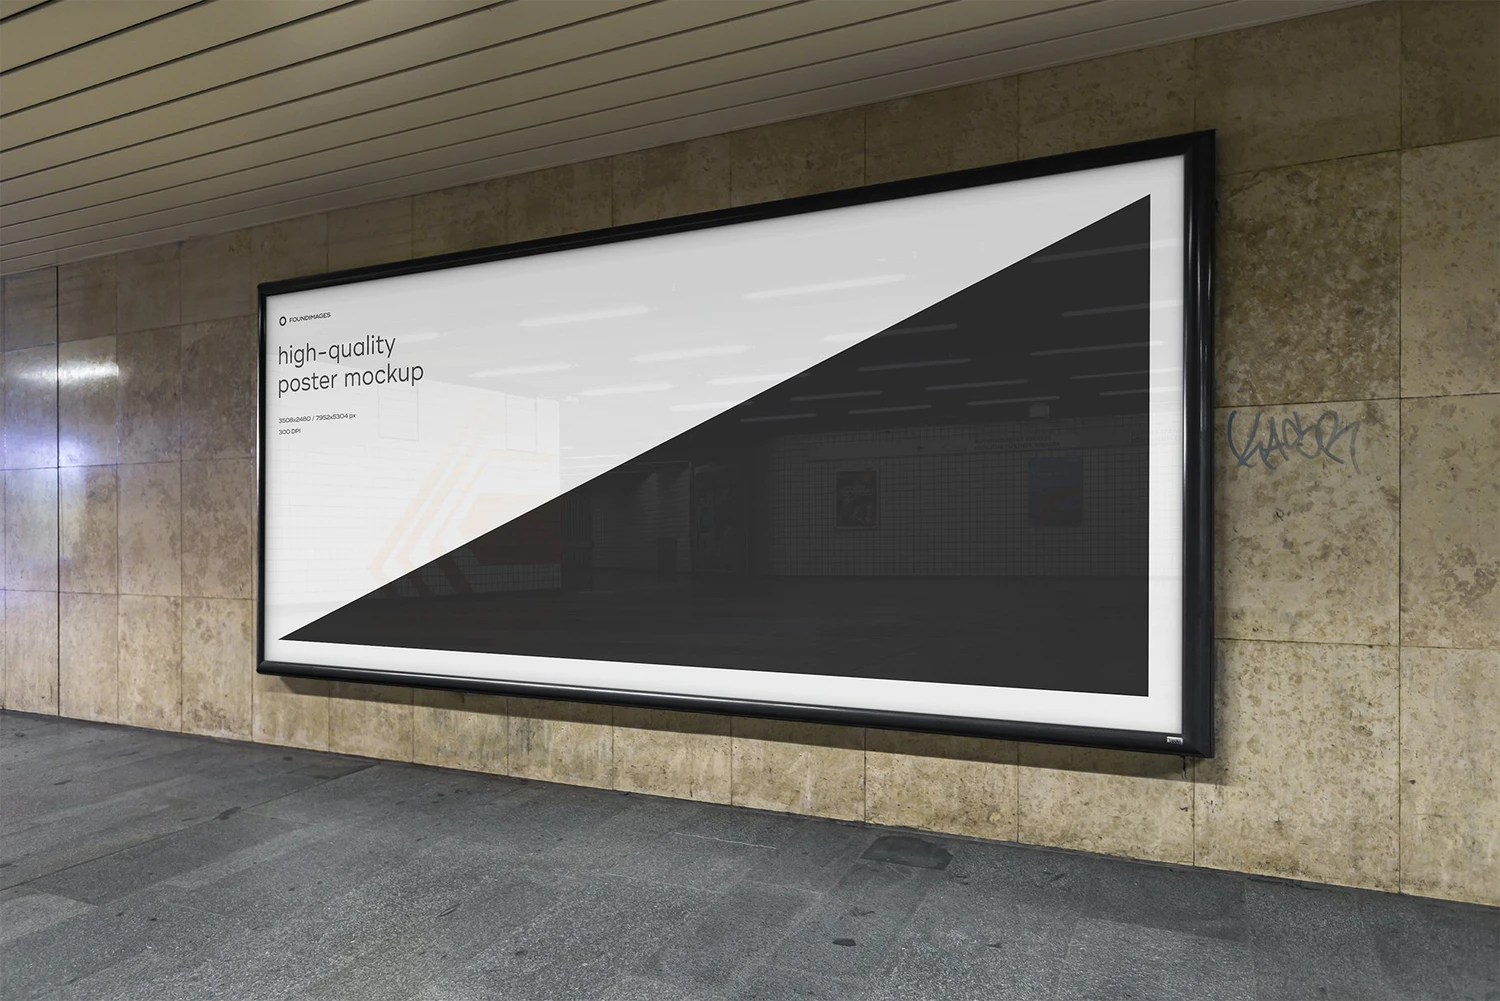 3243 60款地铁车厢海报广告牌灯箱导视设计作品贴图ps样机国外素材模板 Subway Poster Mockup Bundle Metro